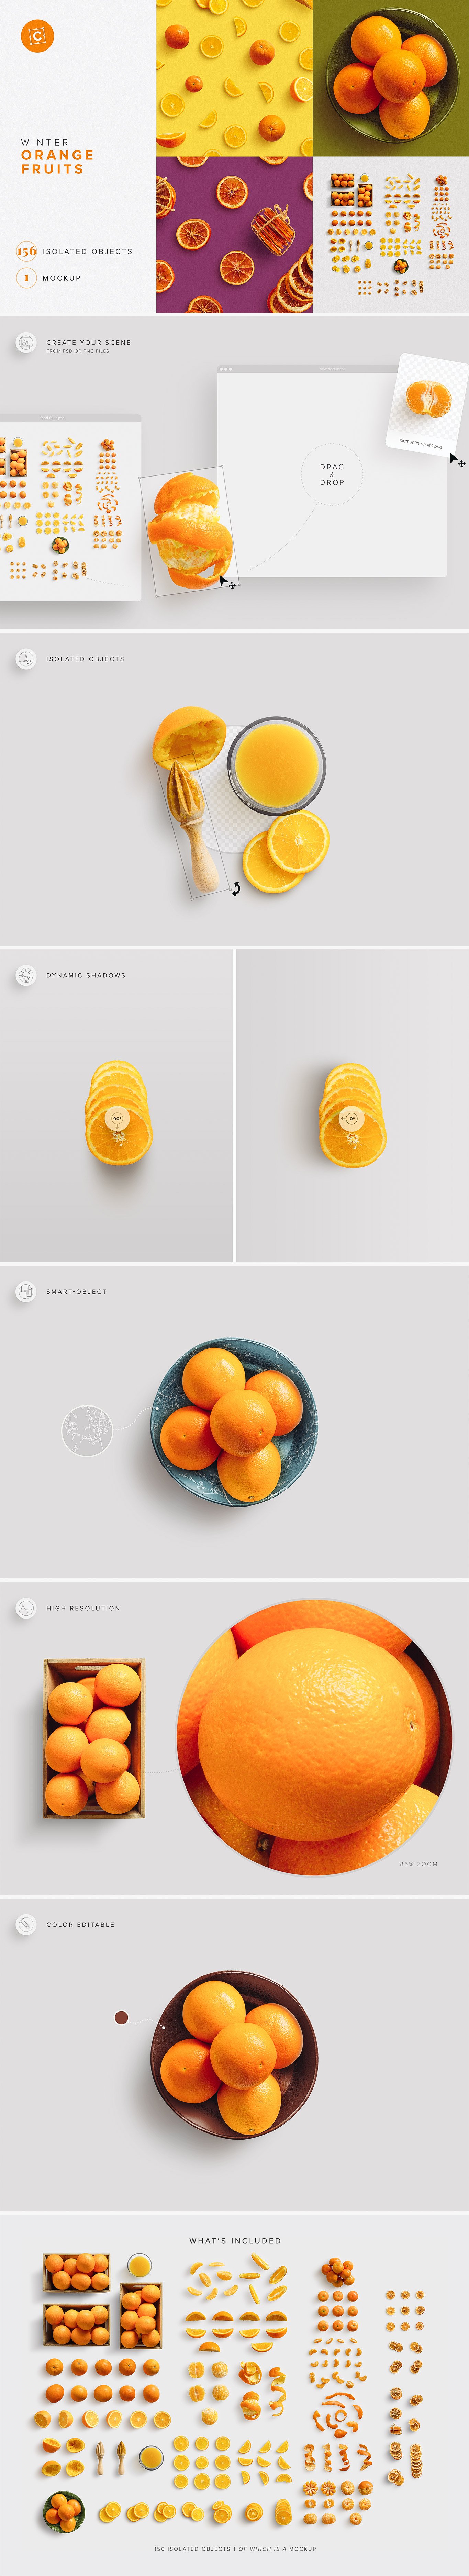 Fruits Oranges Citrus Scene Creator cover image.